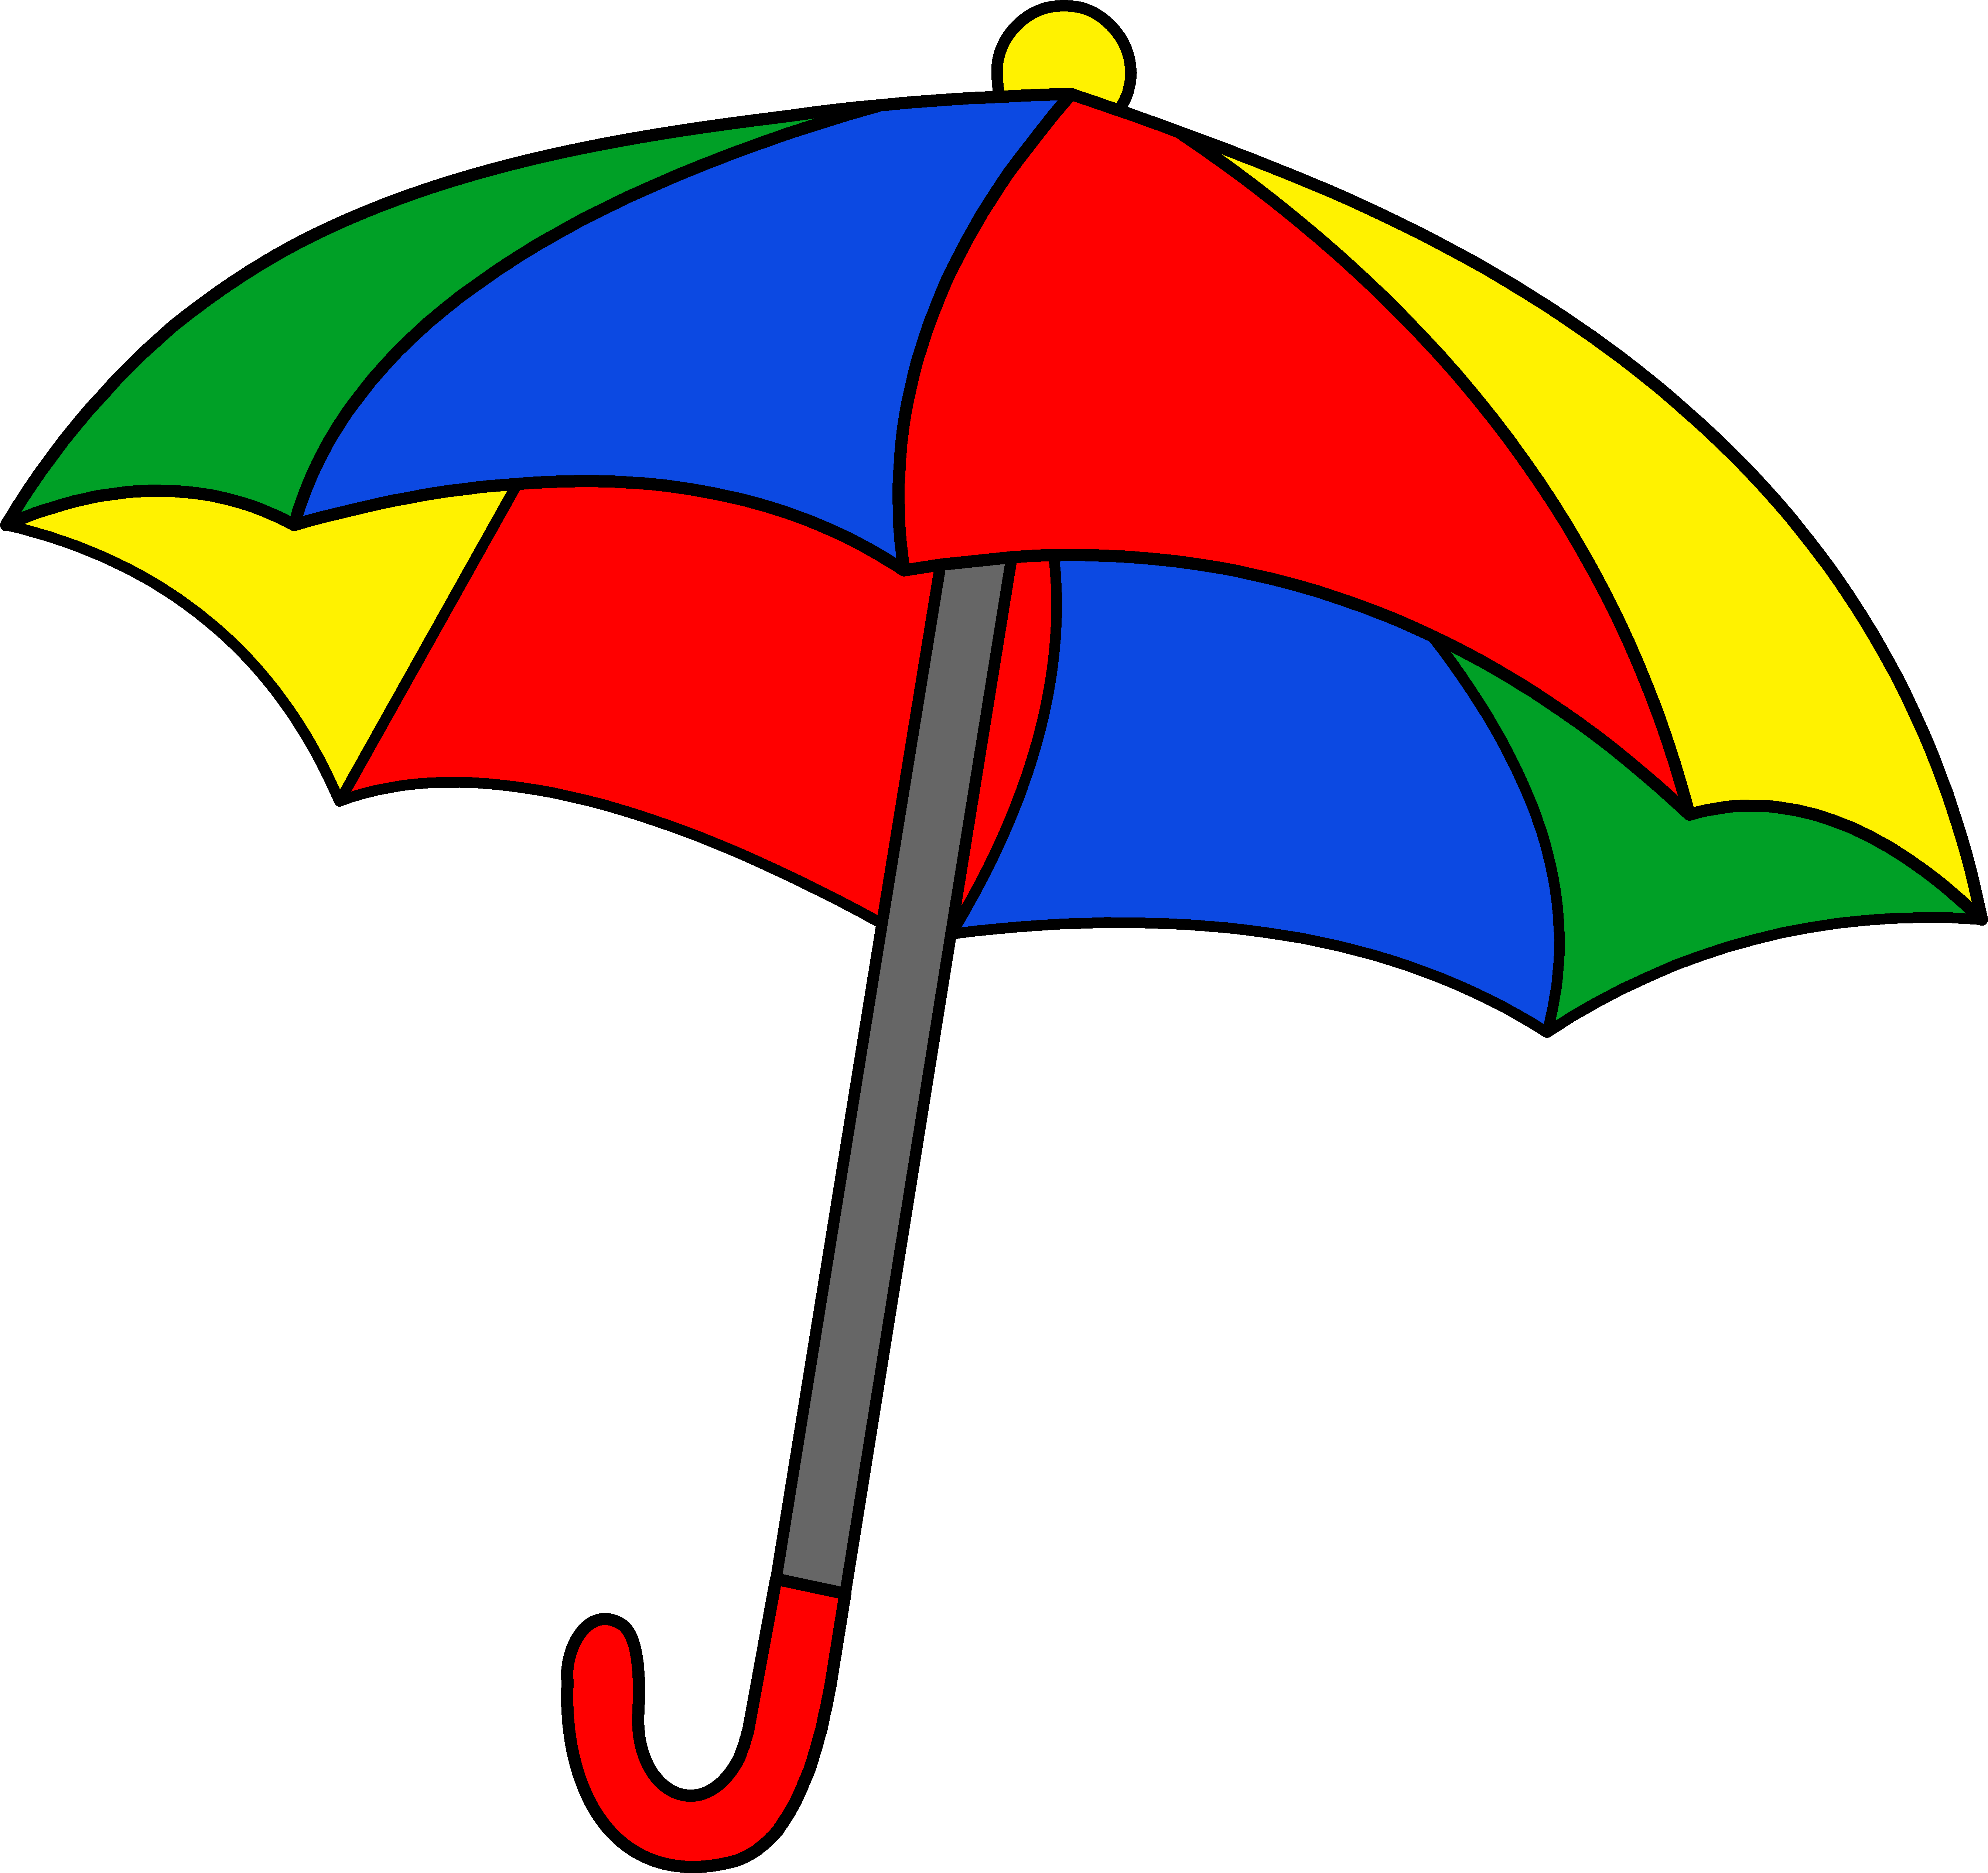 Umbrella clip art free download free clipart images